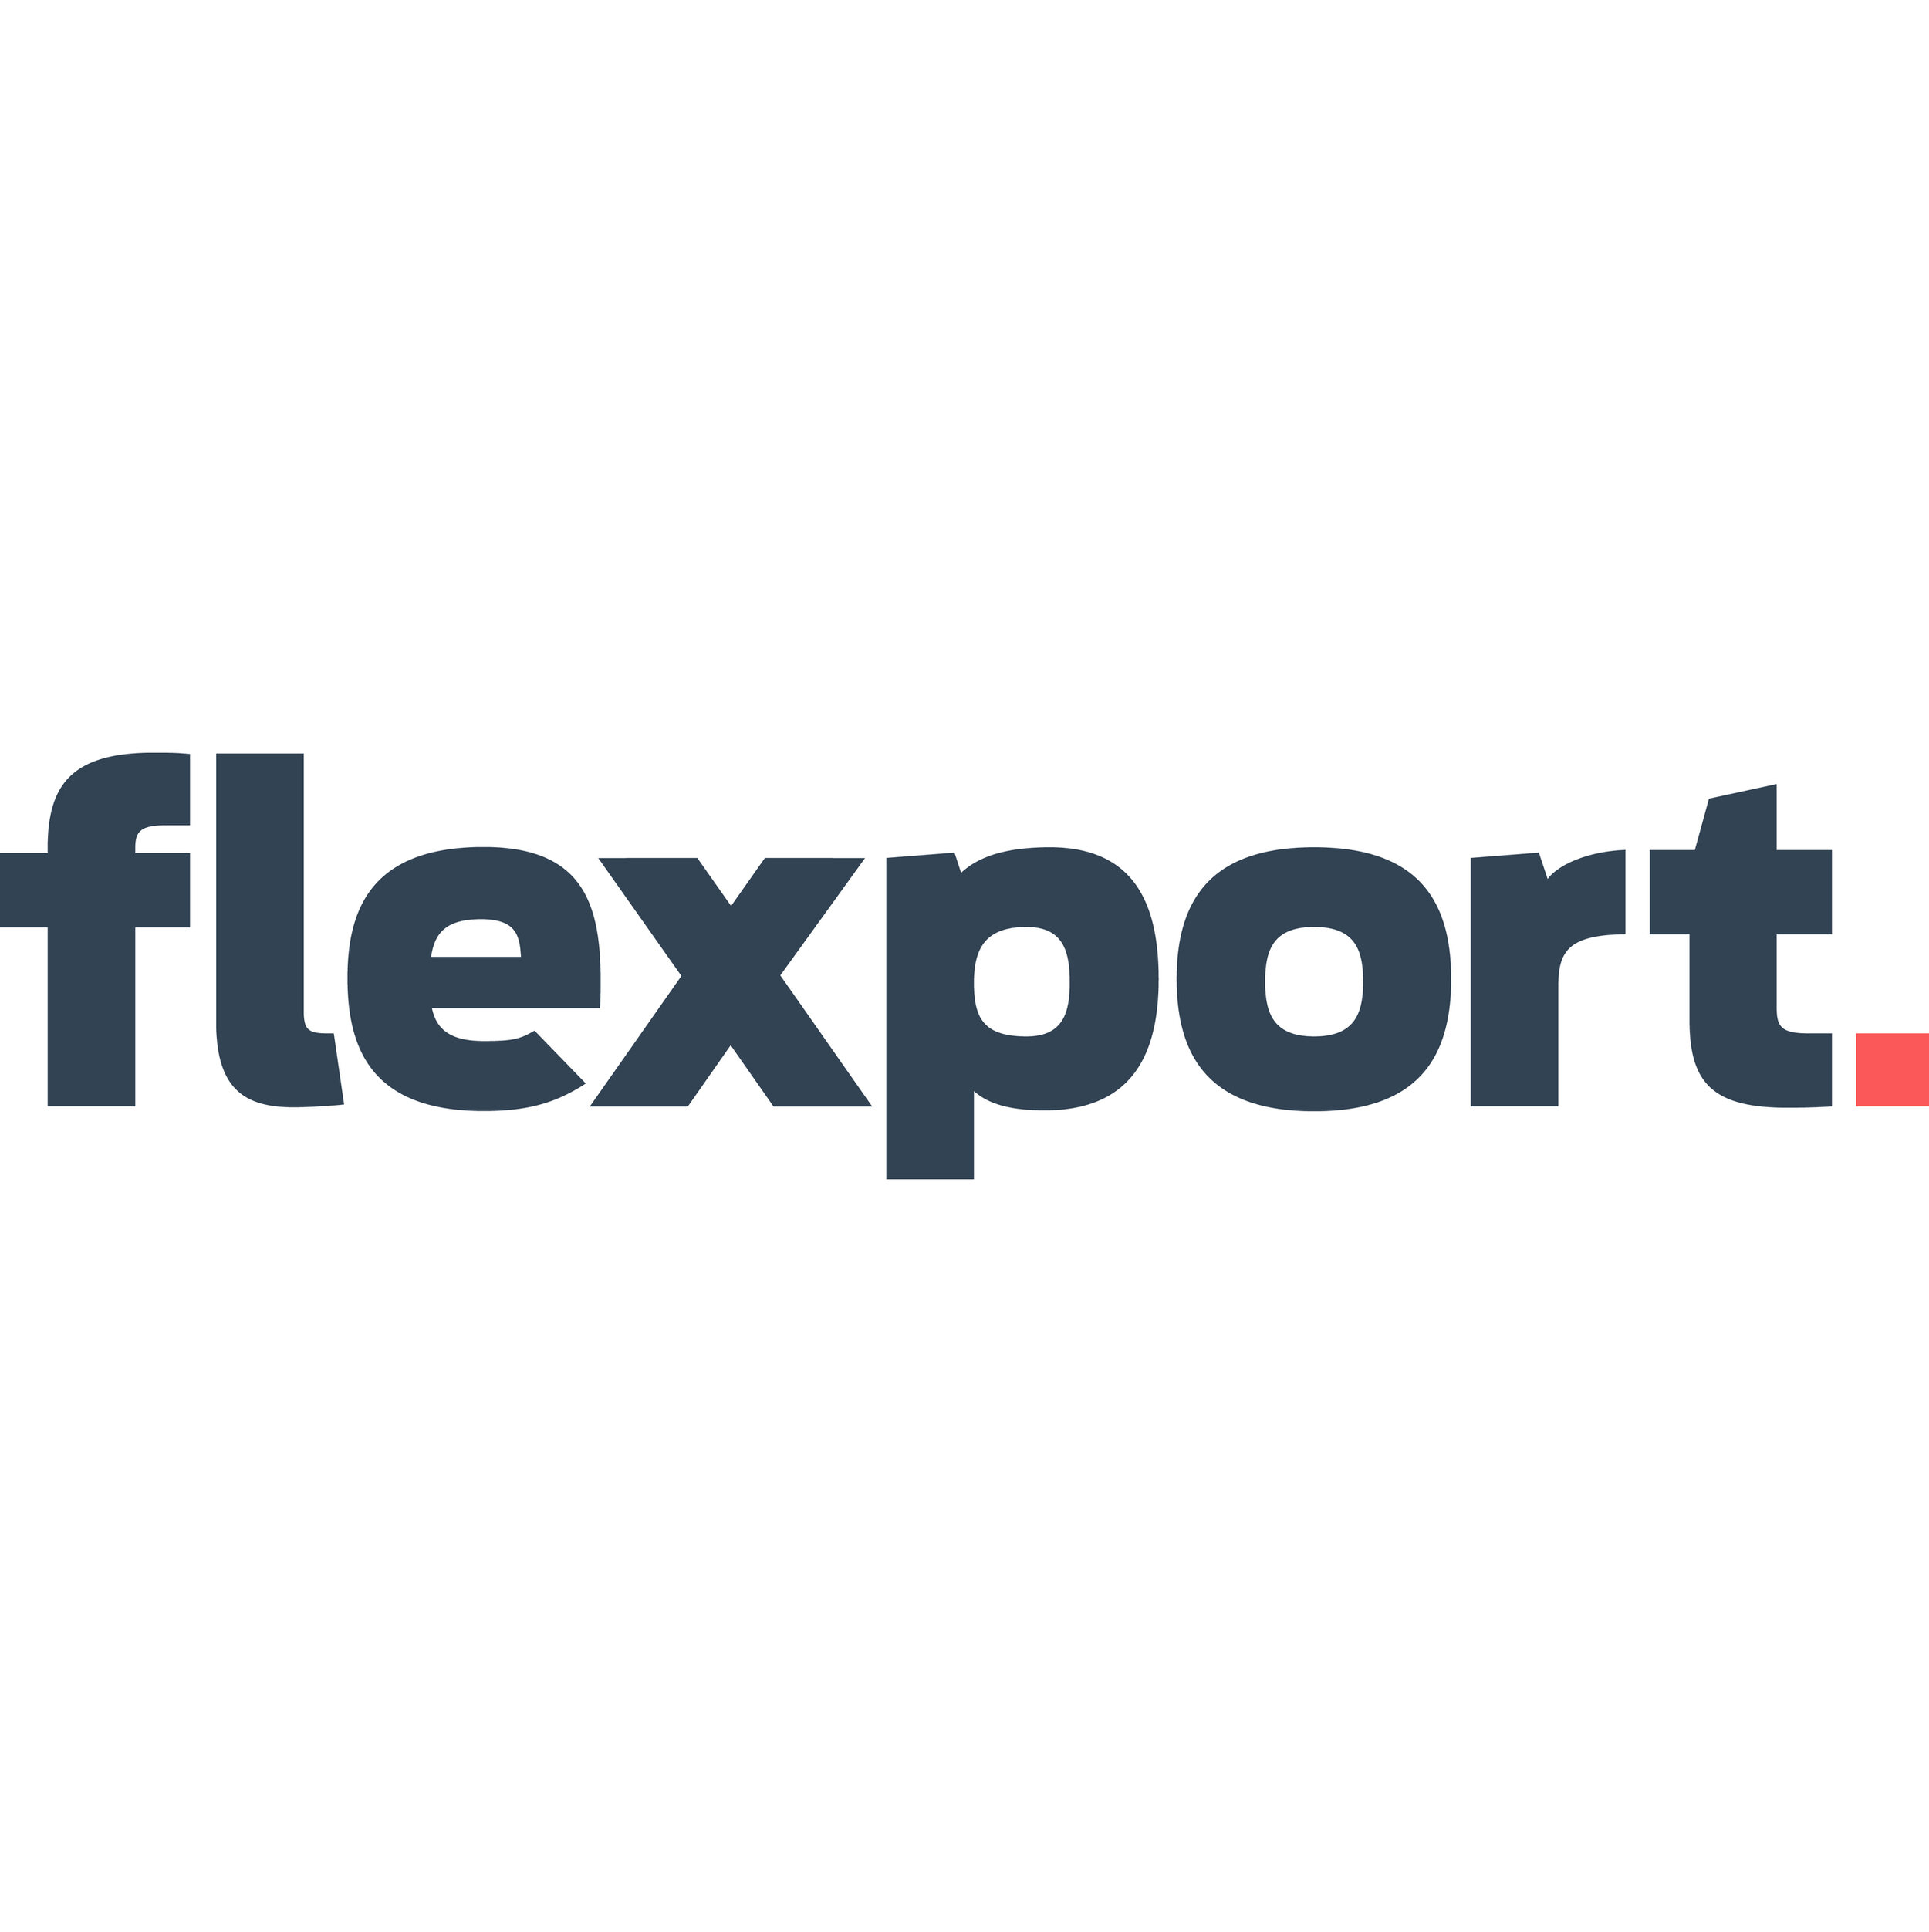 Flexport Logo - Rainmaker Securities